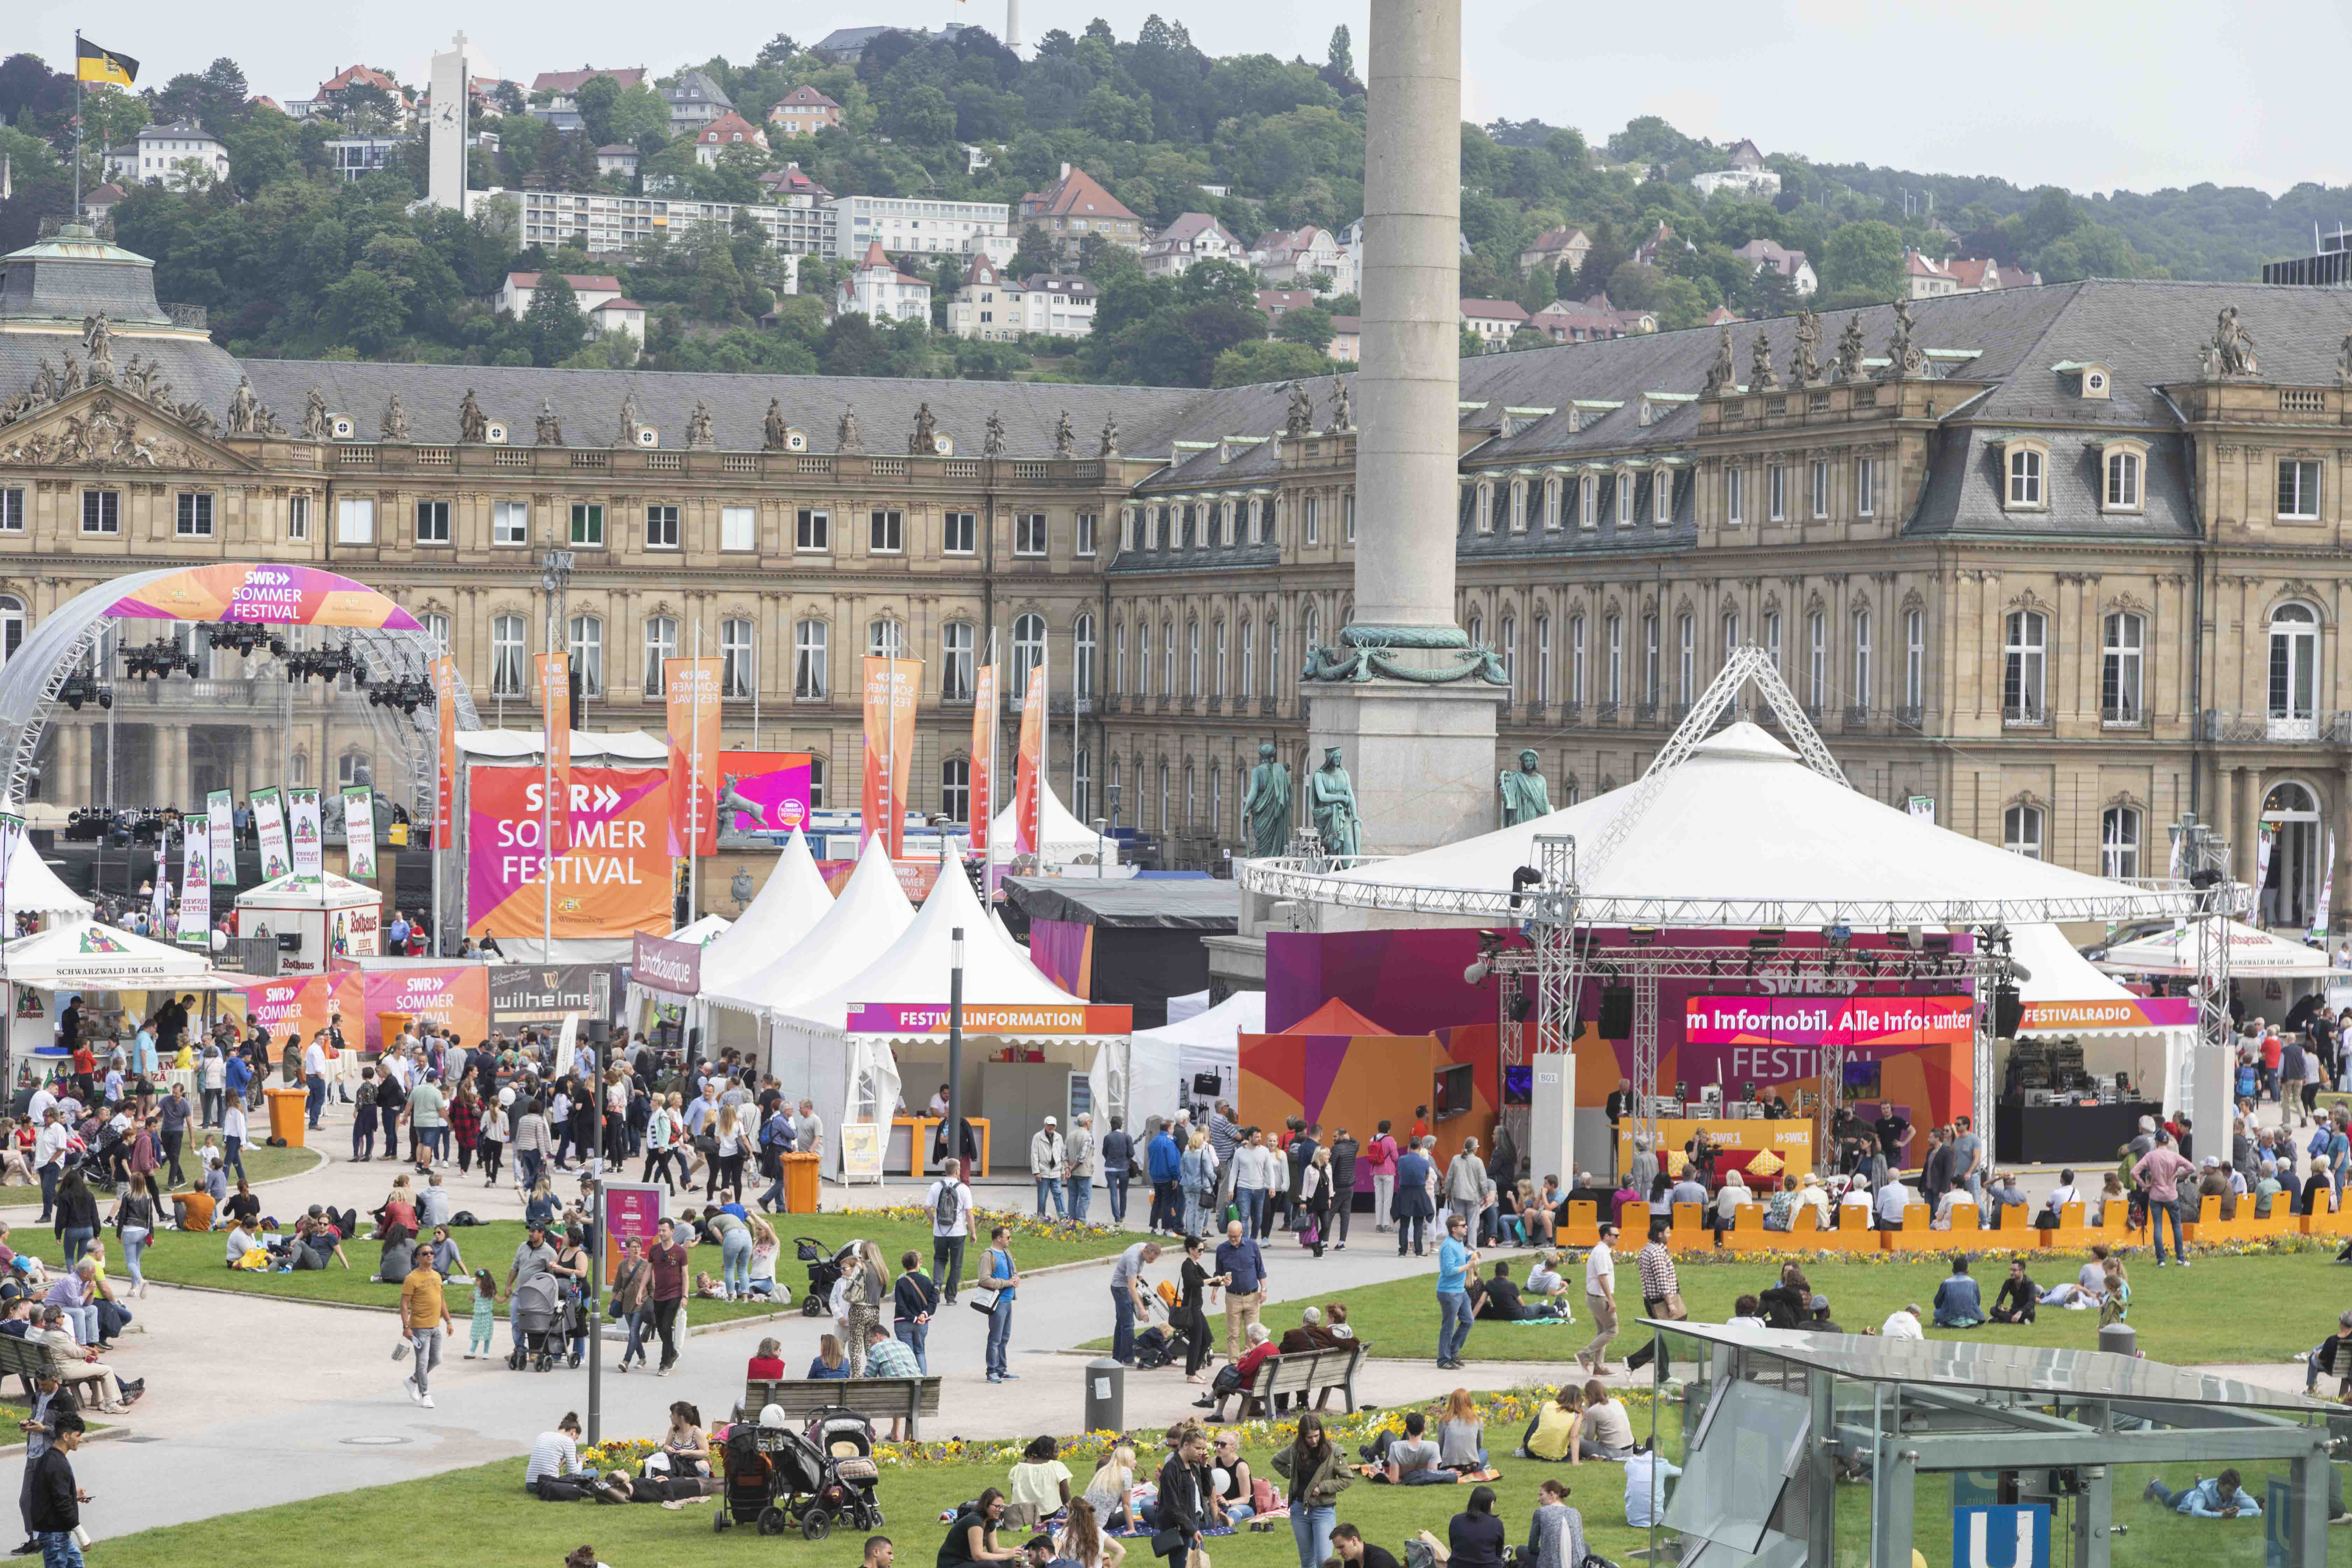 SWR Sommerfestival 2021 auf dem Schlossplatz in Stuttgart